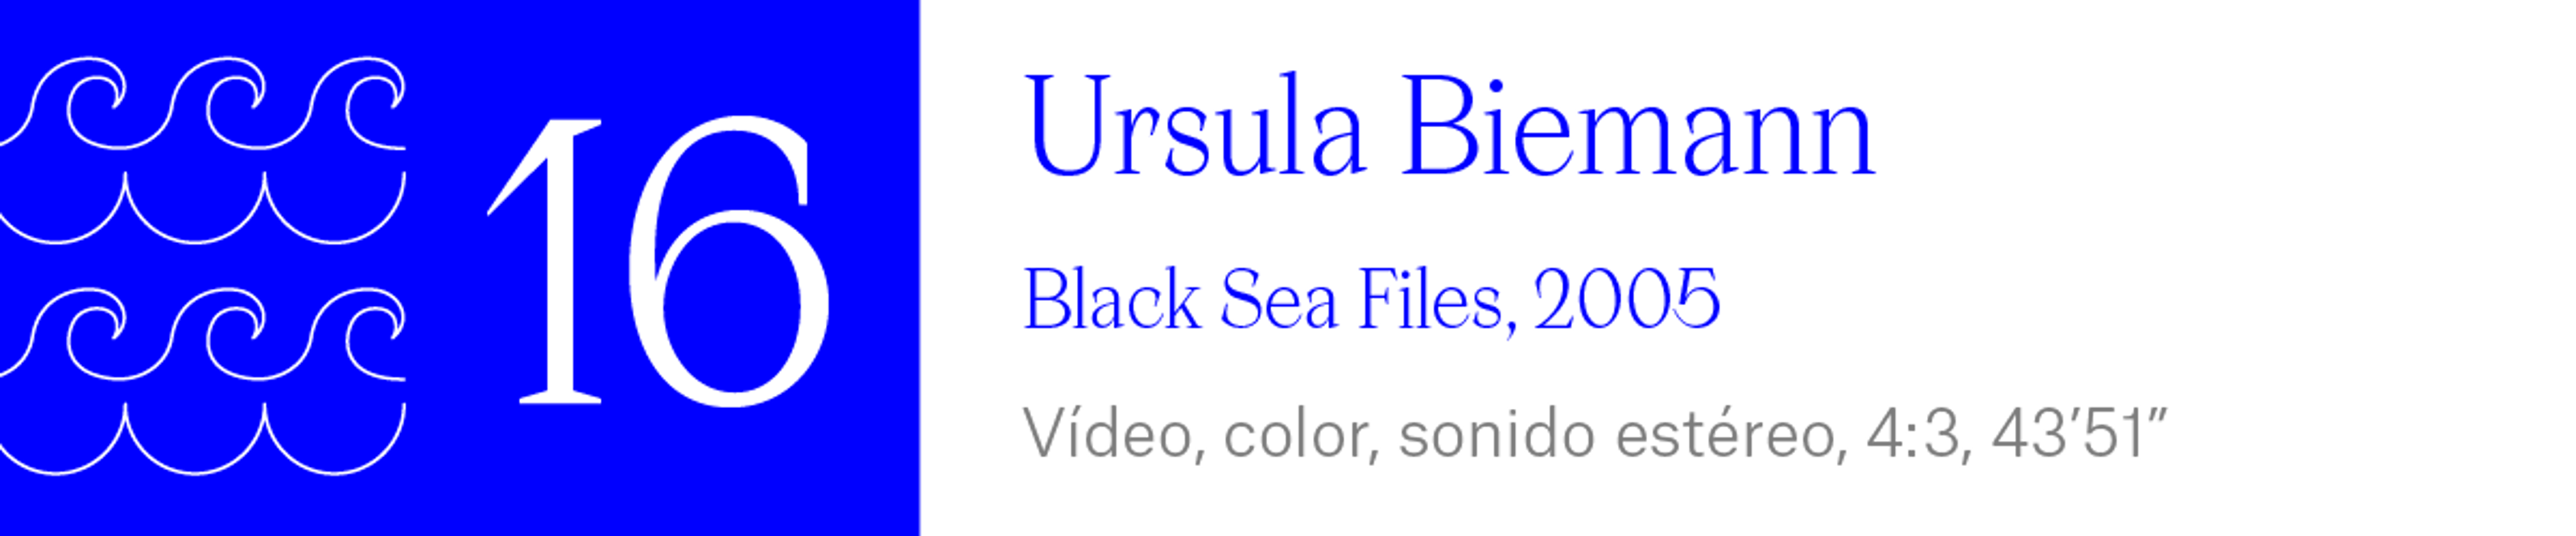 The Wave (16) Ursula Biemann - Black Sea Files, 2005. Vídeo, color, sonido estéreo, 4:3, 43’51”